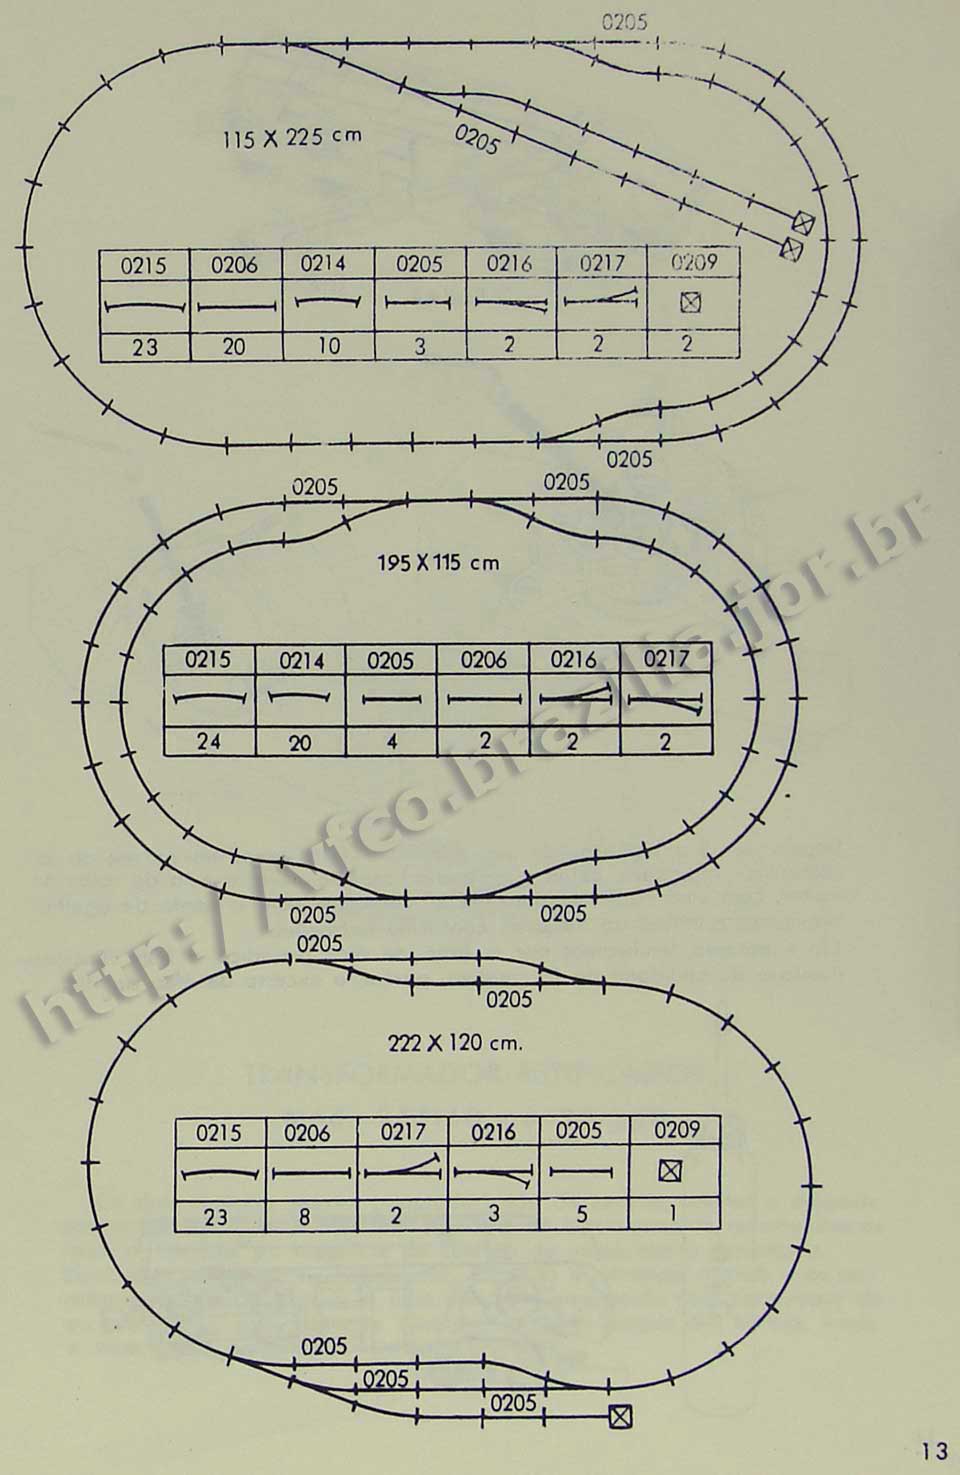 Sugestões de traçados para maquetes na Página 13 do manual "Como montar e operar seu trem elétrico Atma" para maquete de ferreomodelismo